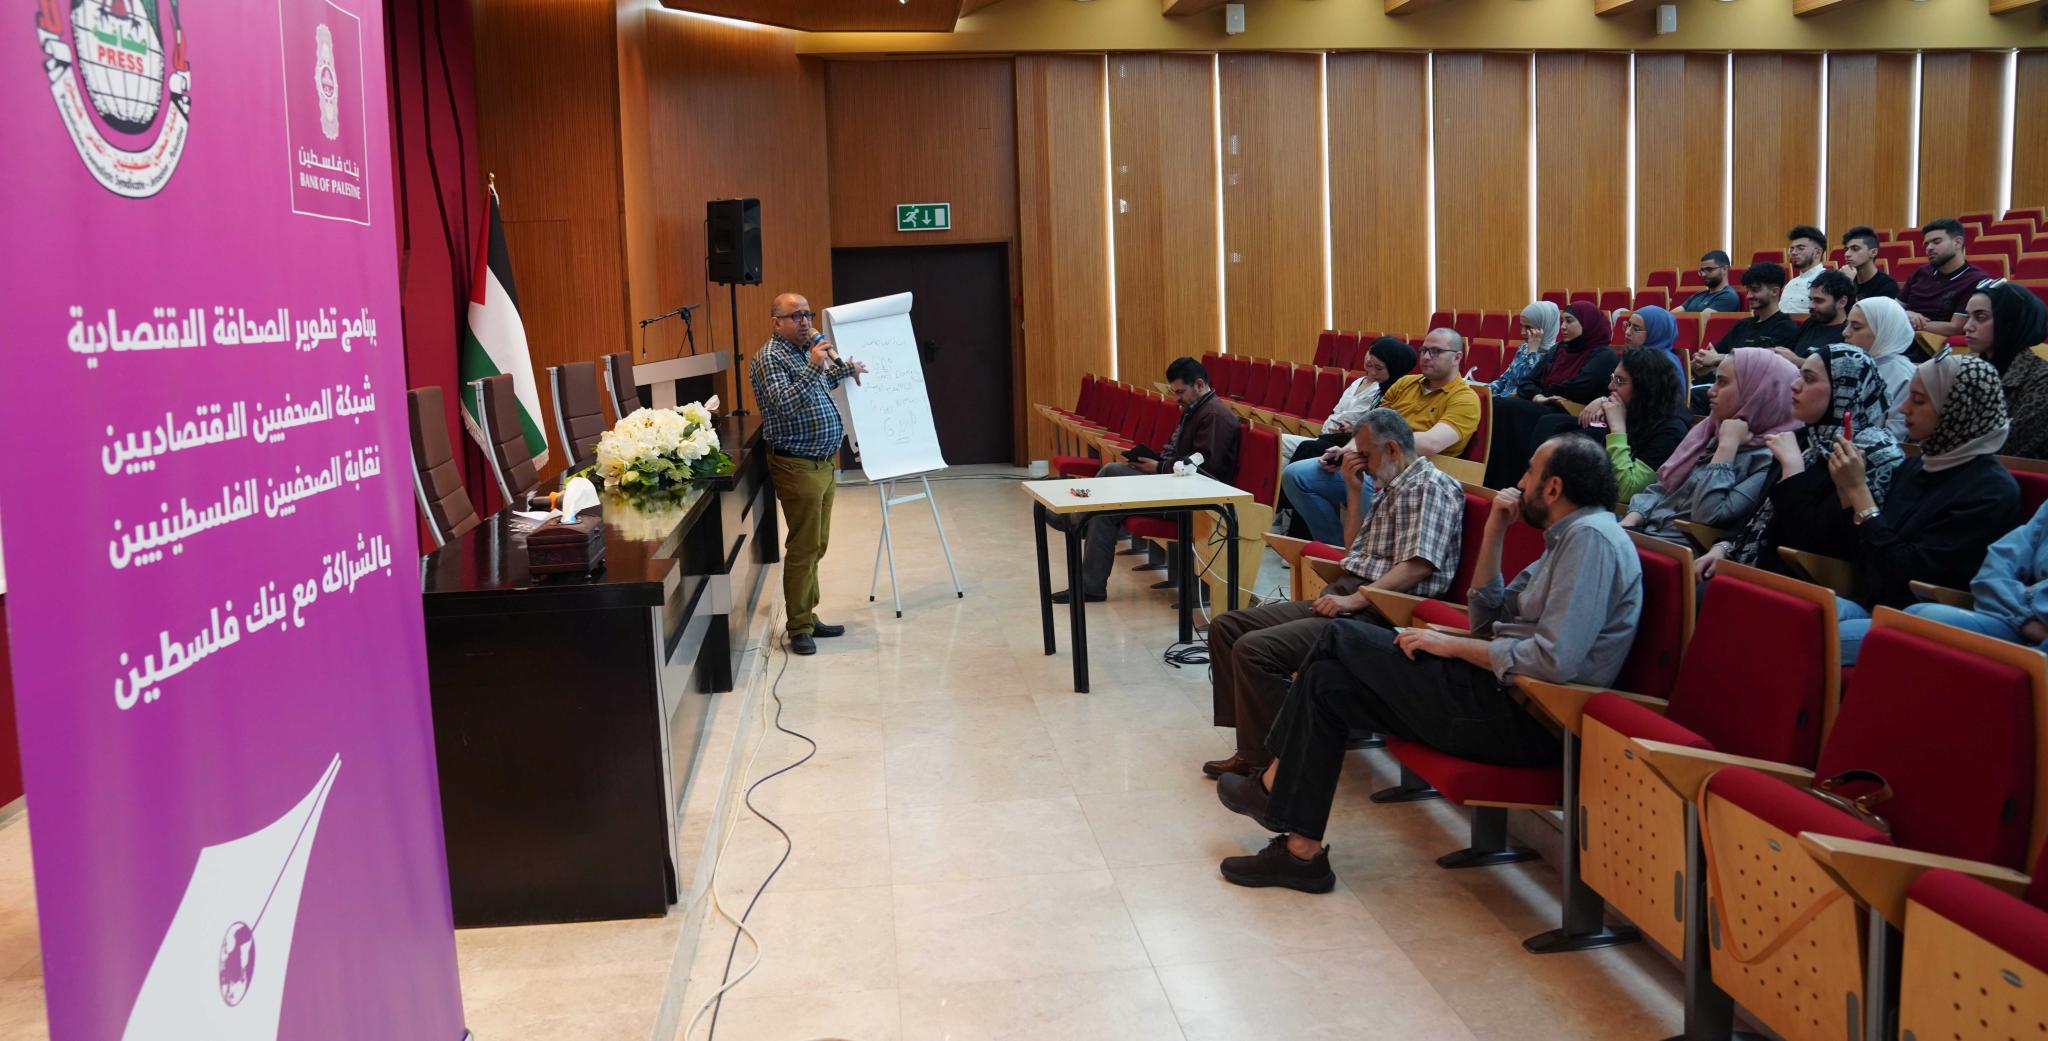 الجامعة تنظم لقاء تدريبيا لطلبة قسم اللغة العربية والإعلام حول مبادئ الصحافة الاقتصادية